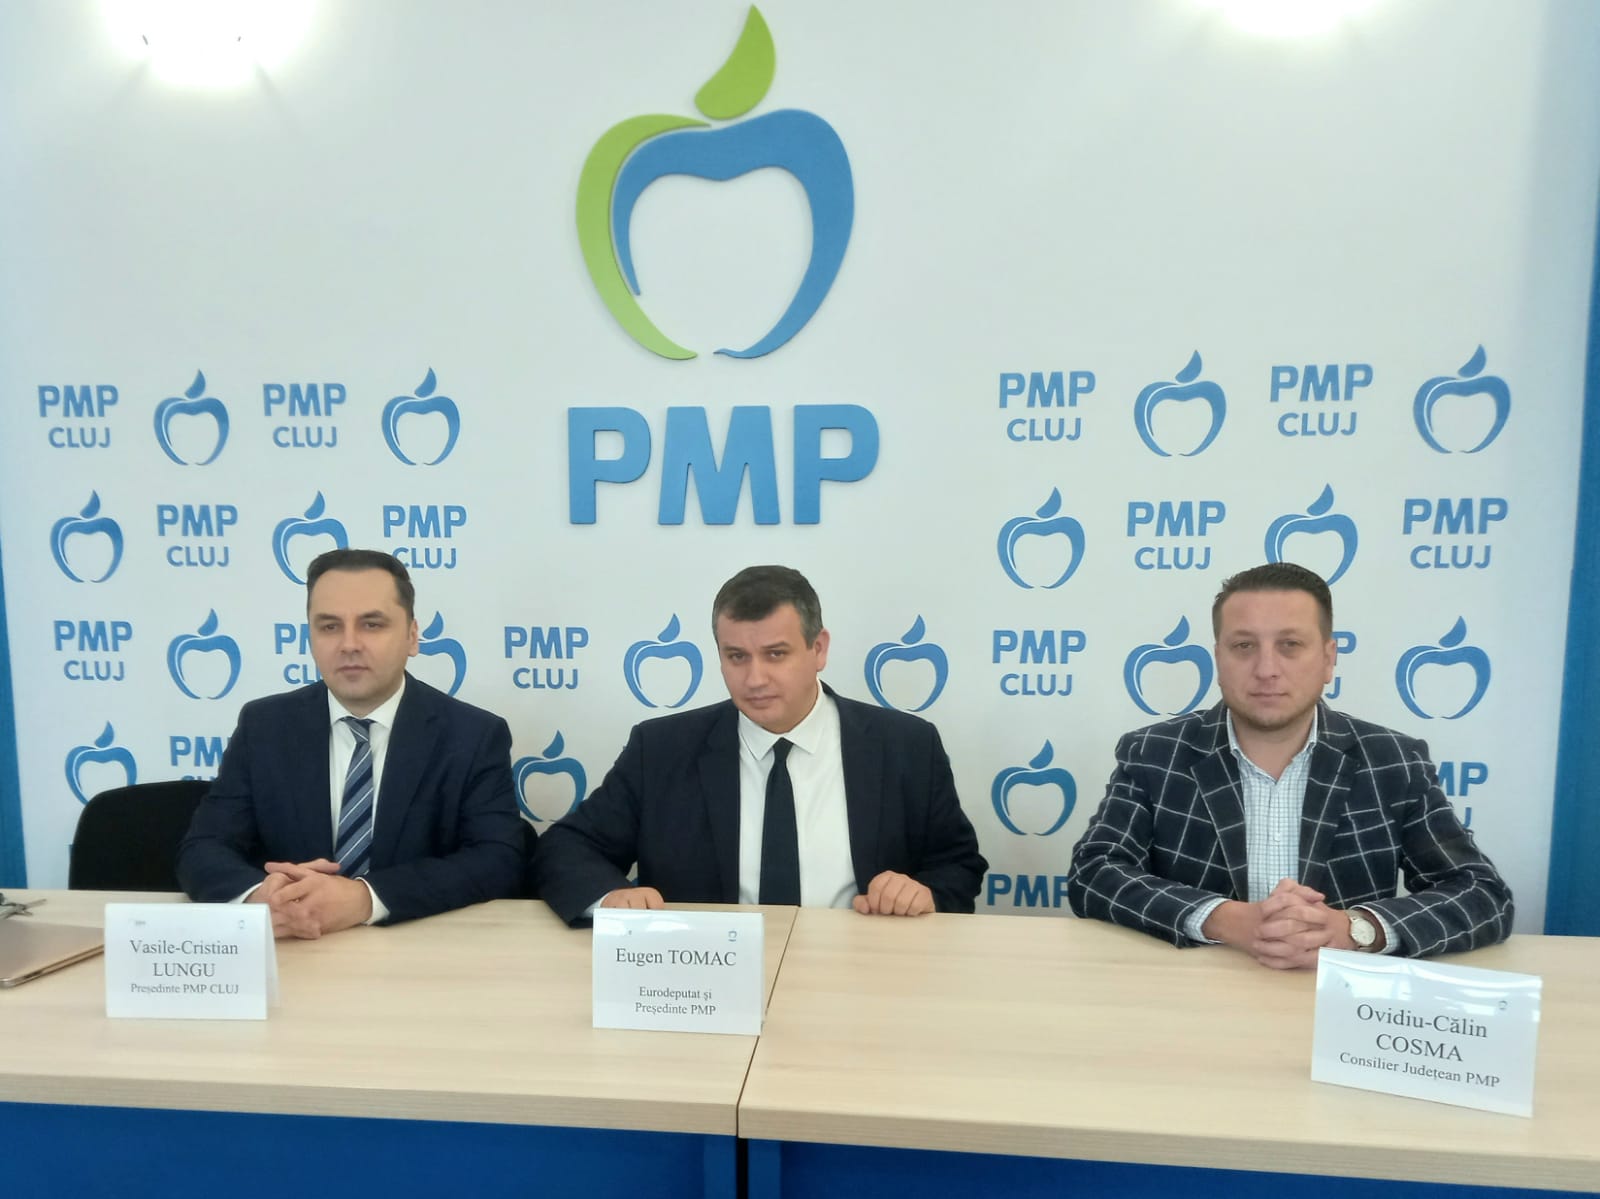 Vasile-Cristian Lungu - Președinte PMP Cluj, Eugen Tomac - Președintele PMP, Ovidiu-Călin Cosma - Consilier județean PMP. FOTO: Monitorul de Cluj